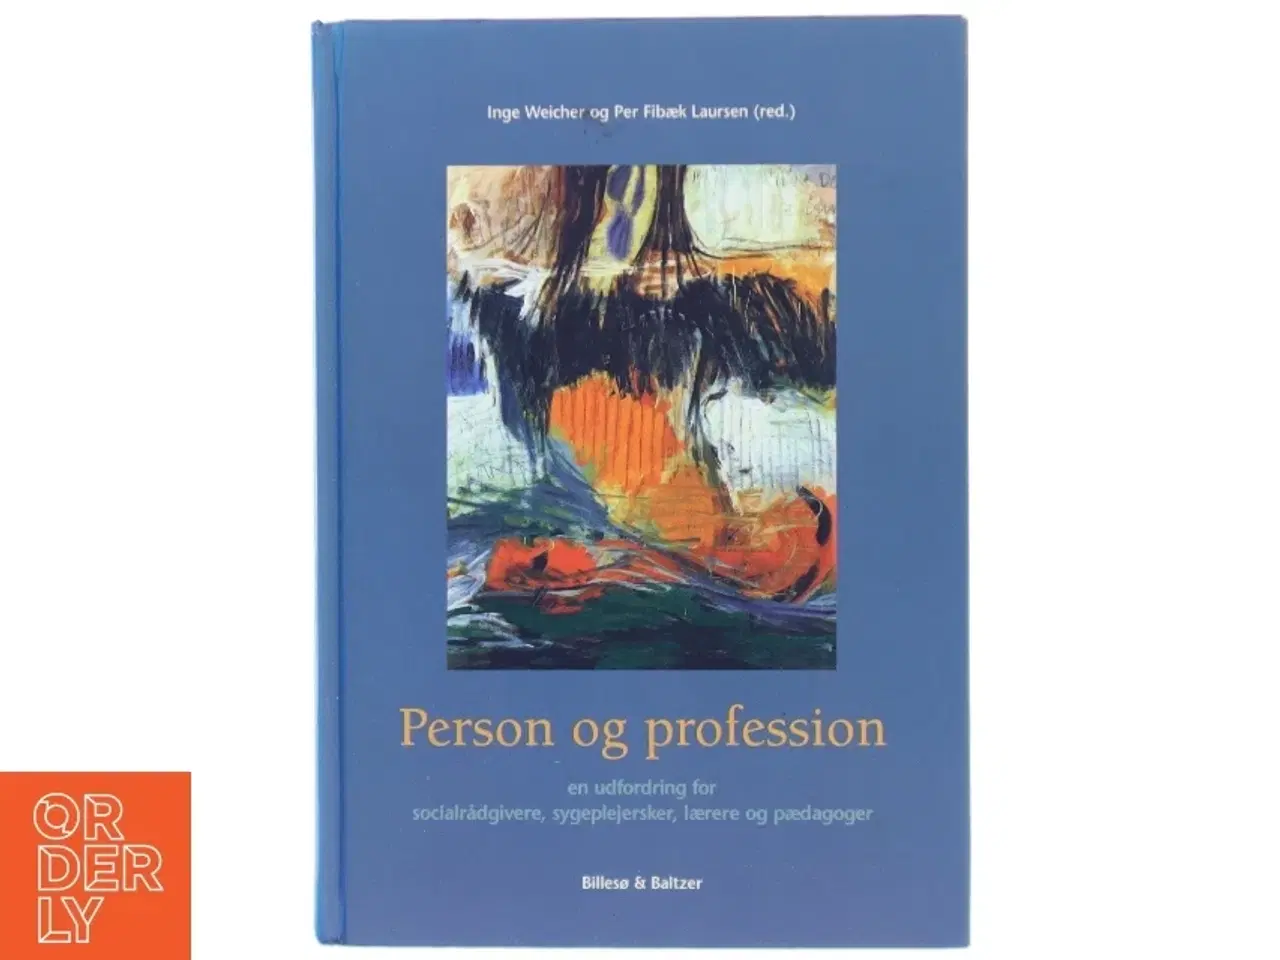 Billede 1 - Person og profession : en udfordring for socialrådgivere, sygeplejersker, lærere og pædagoger (Bog)